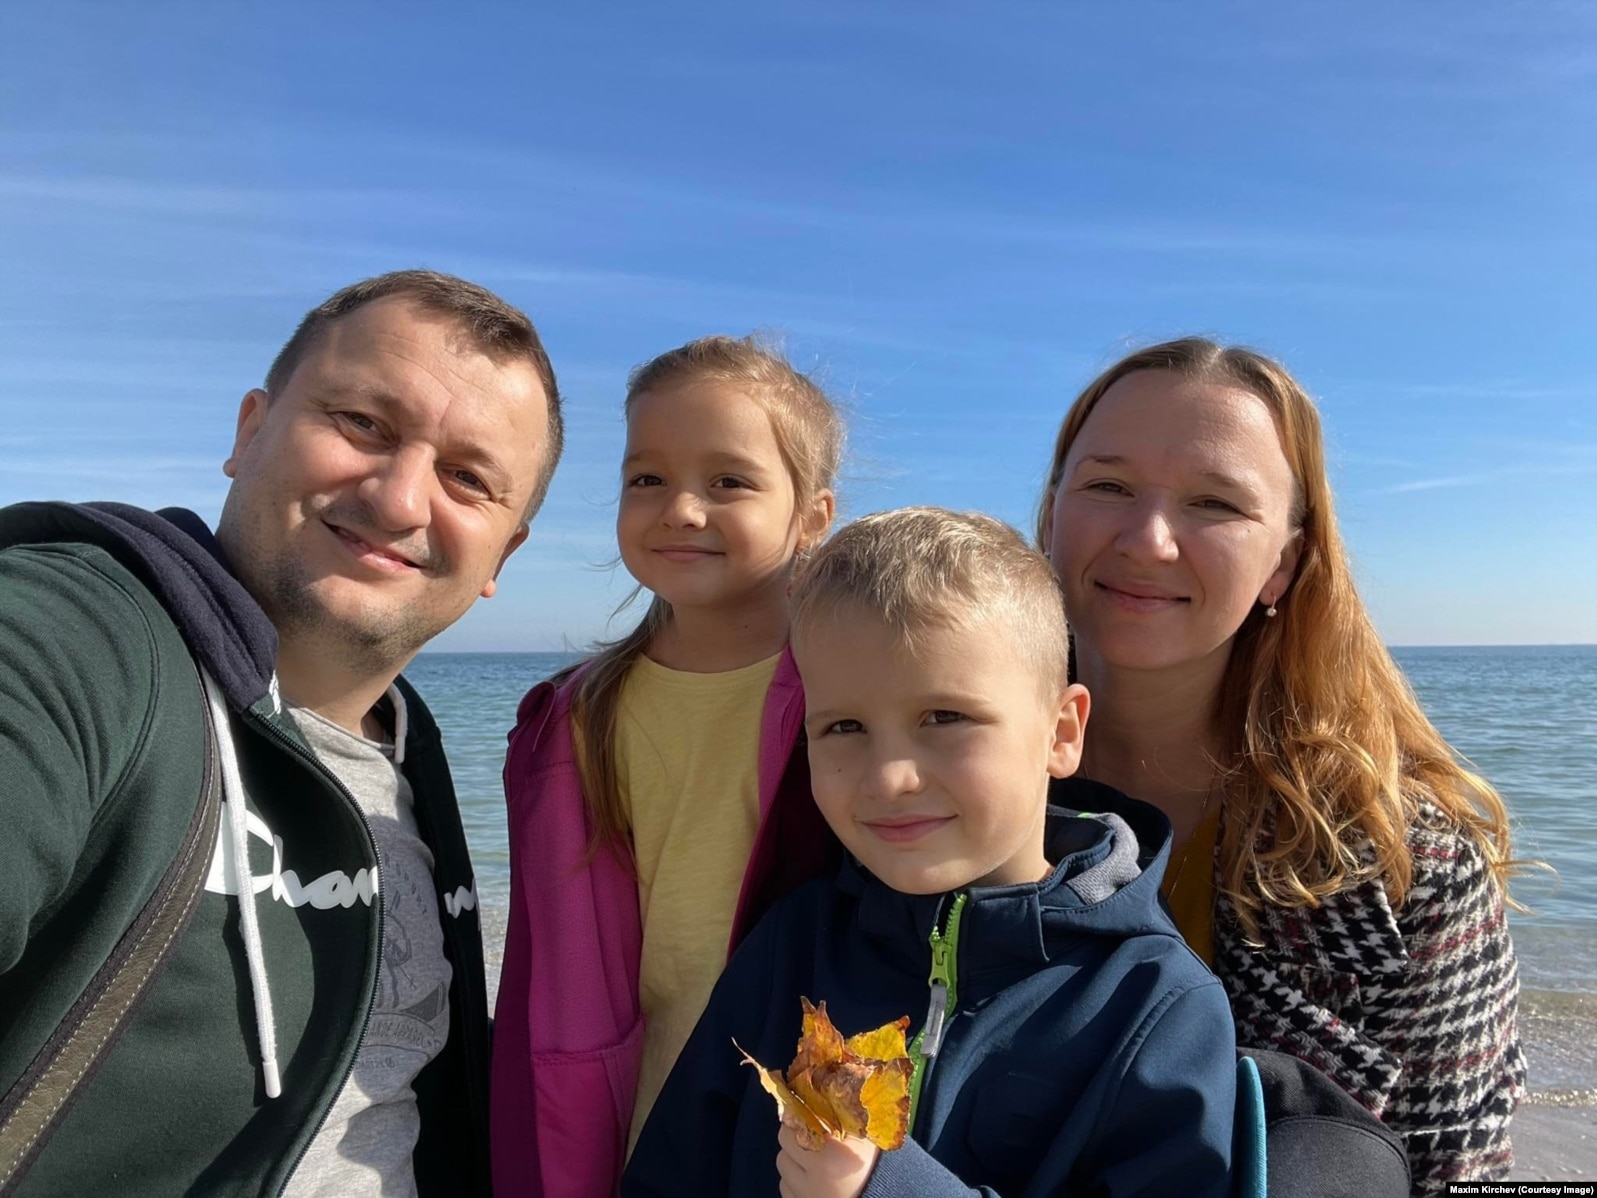 Maxim Kirchev me familjen e tij gjatë një vizite në Odesa, në shtator të vitit 2022.